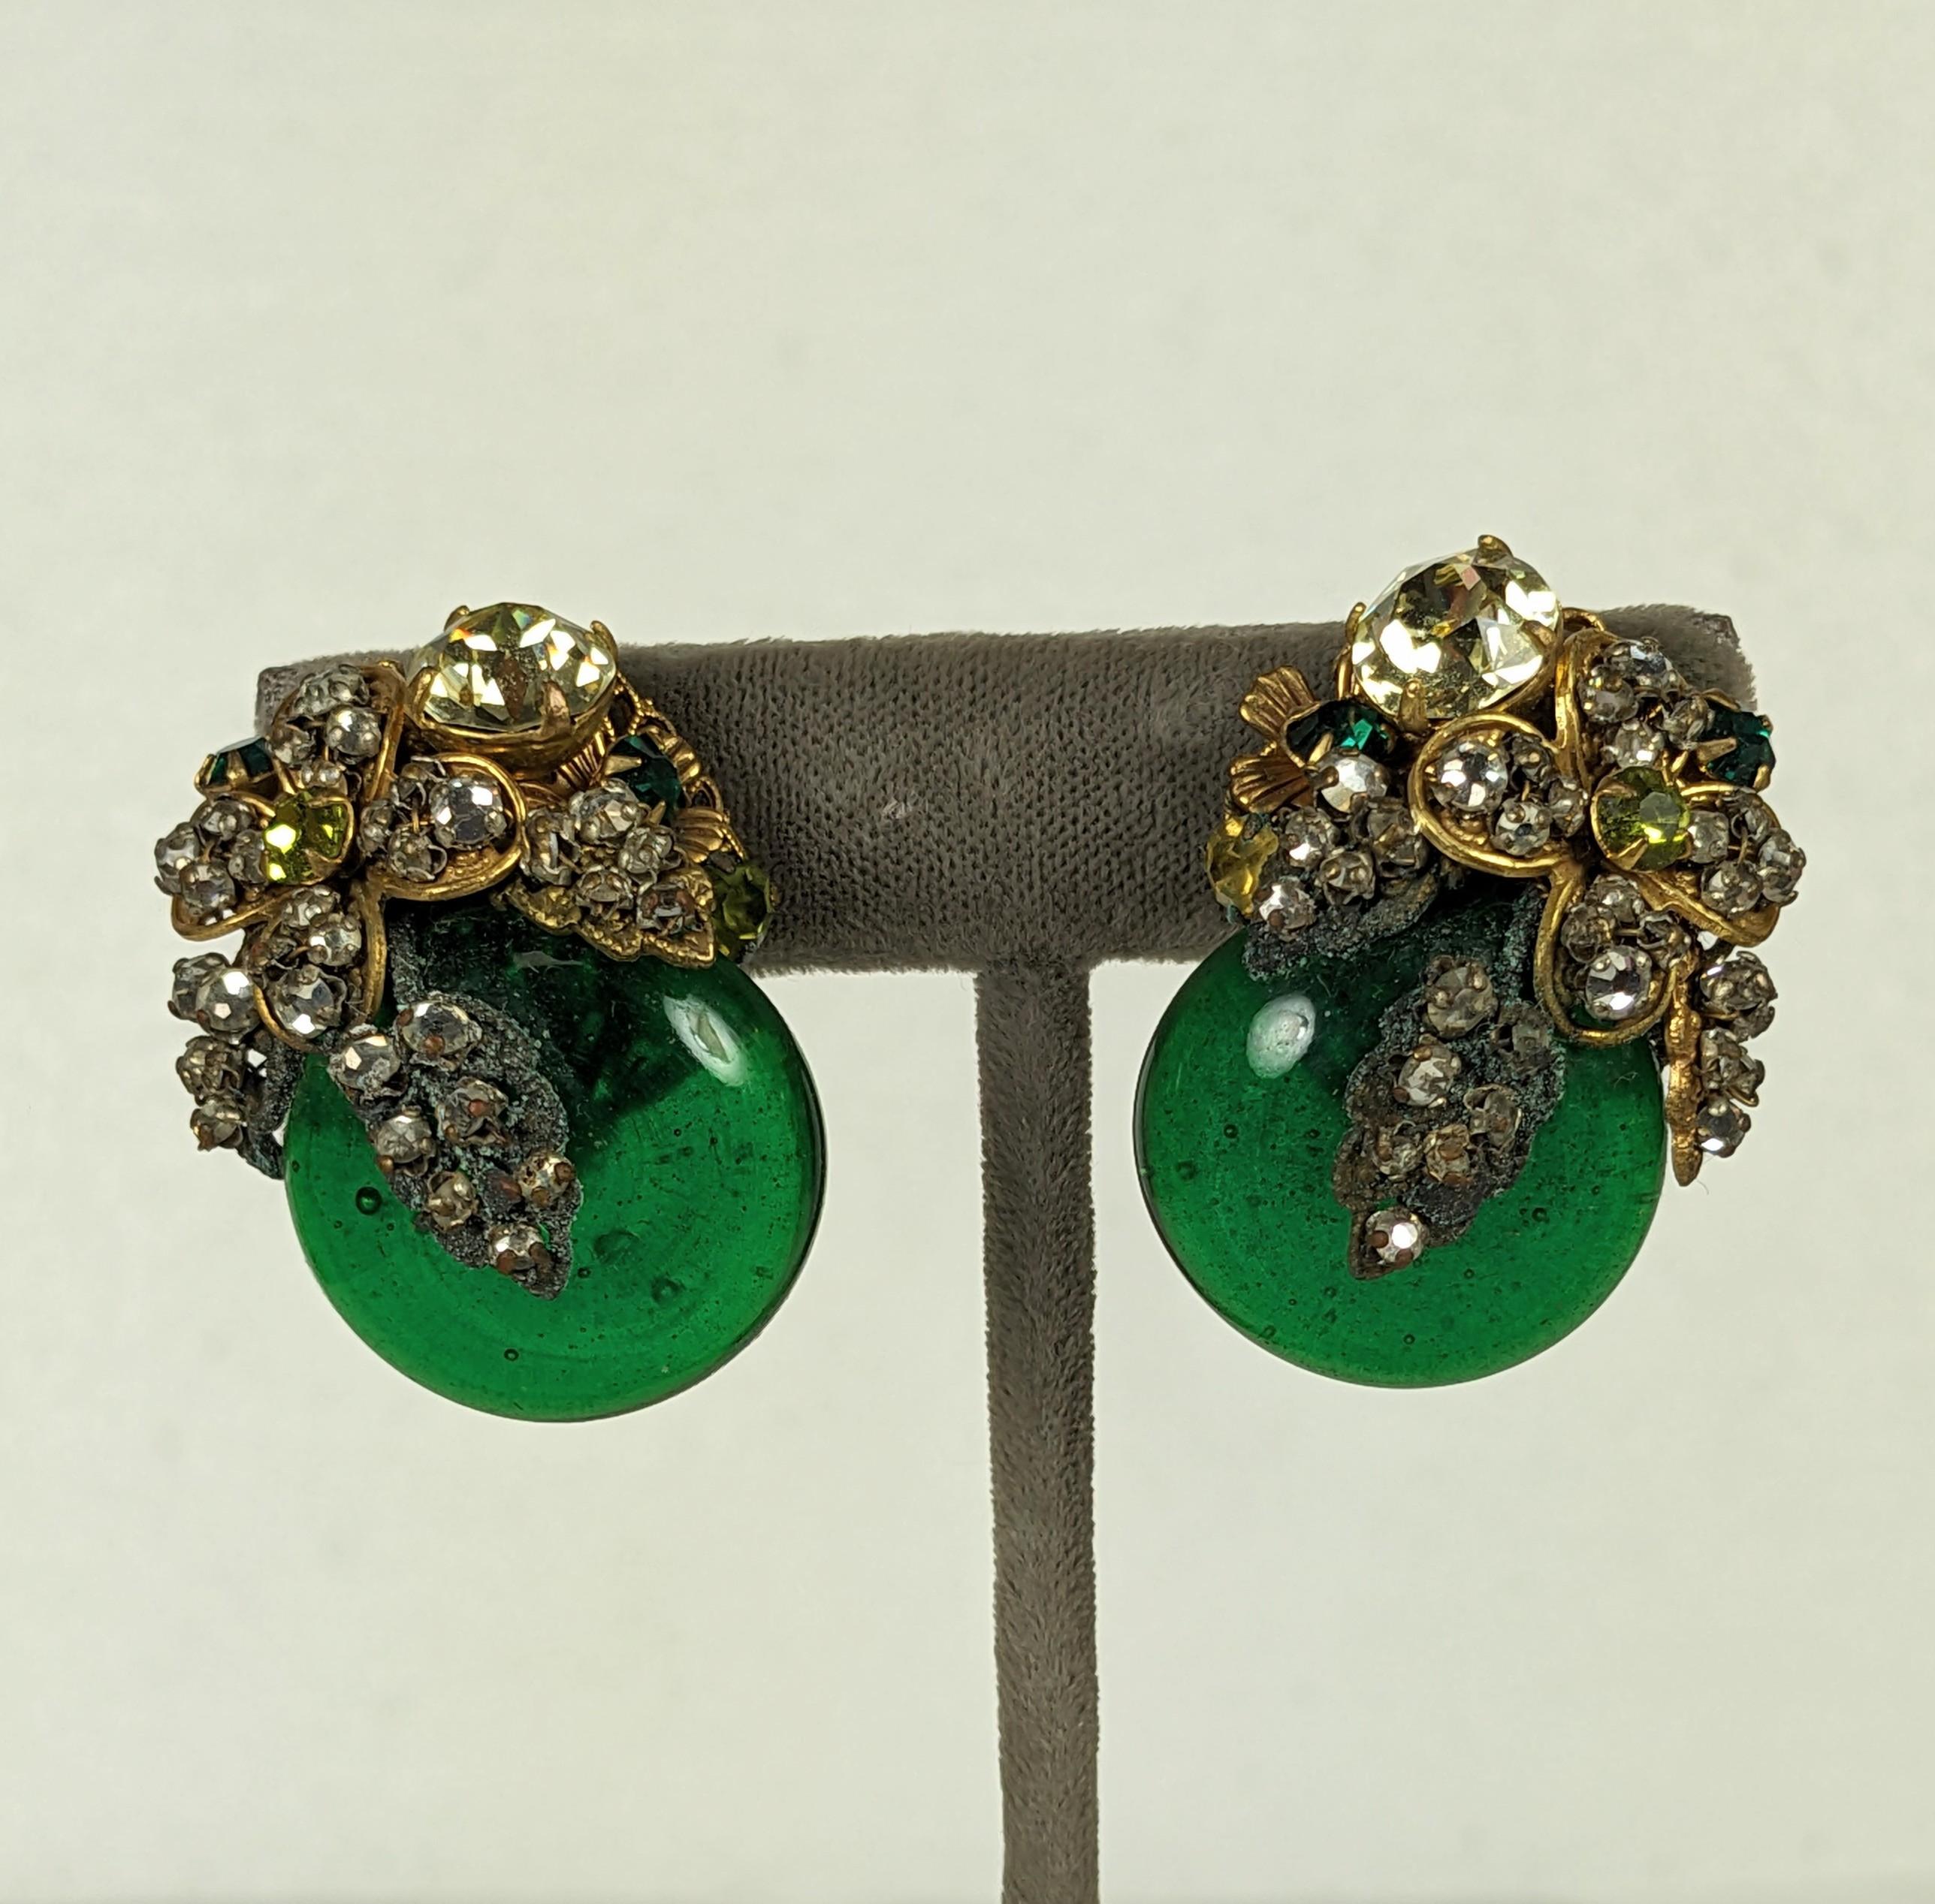 Miriam Haskell Ornate Emerald Gripoix Glass Earrings aus den 1950er Jahren. Große smaragdgrüne Pate de Verre-Kabinen sind mit Steinen auf russisch vergoldeten Filigranen in Citrin, Smaragd, Peridot und Kristall bestickt. Hervorragende handgefertigte